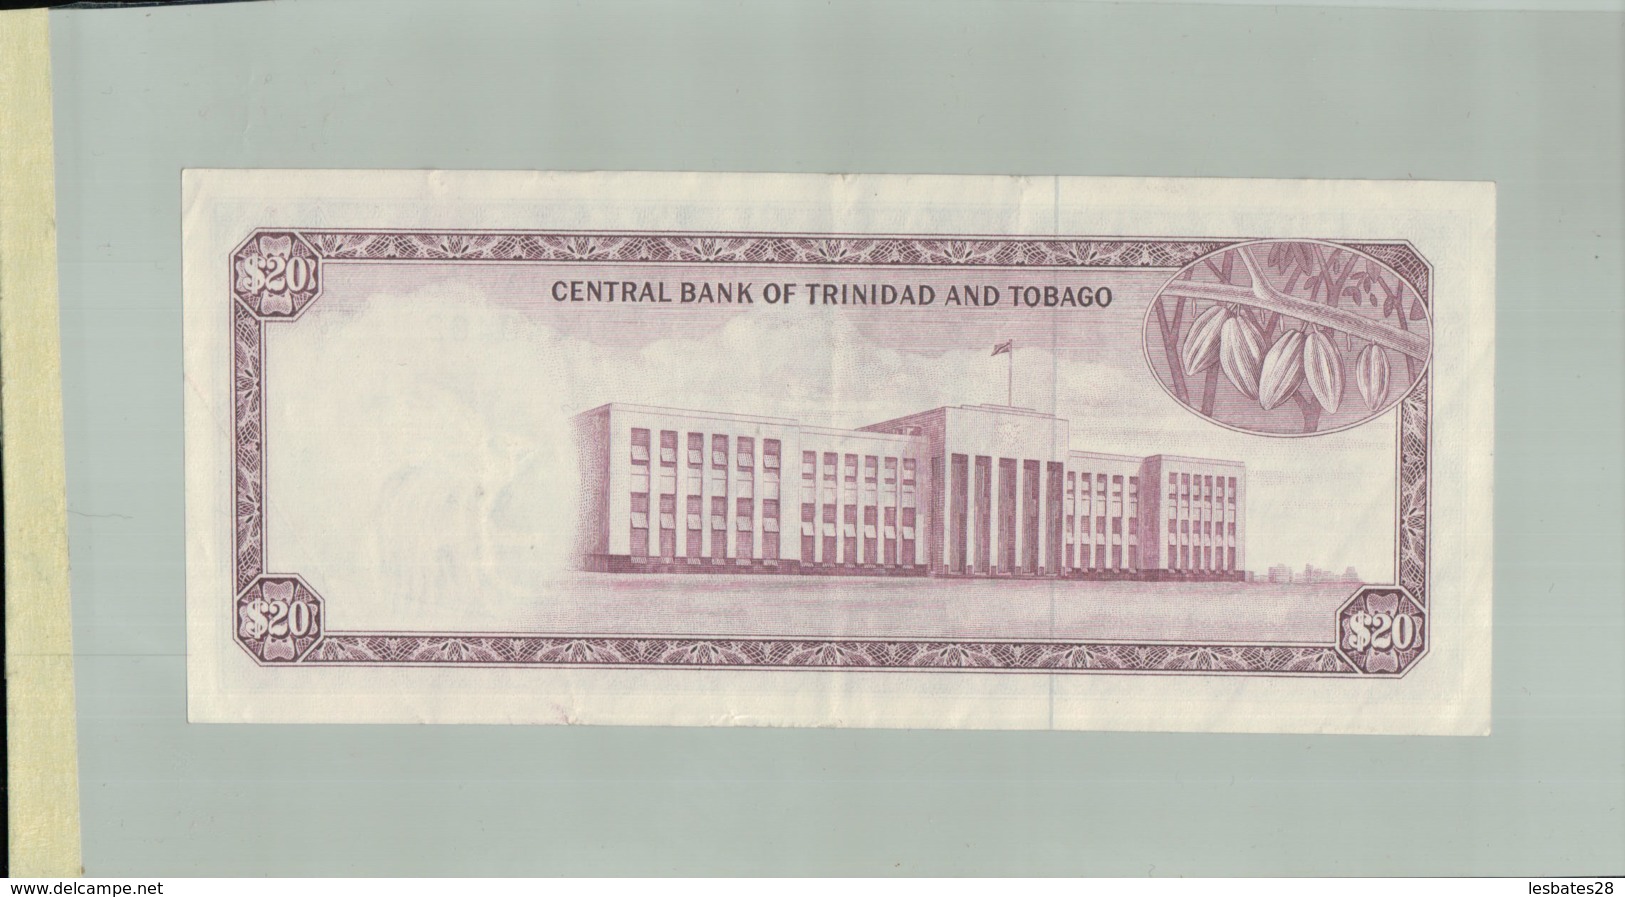 Billet De Banque Central Bank Of Trinidad And Tobago - 20 Dollars 1964   DEC 2019 Gerar - Trindad & Tobago